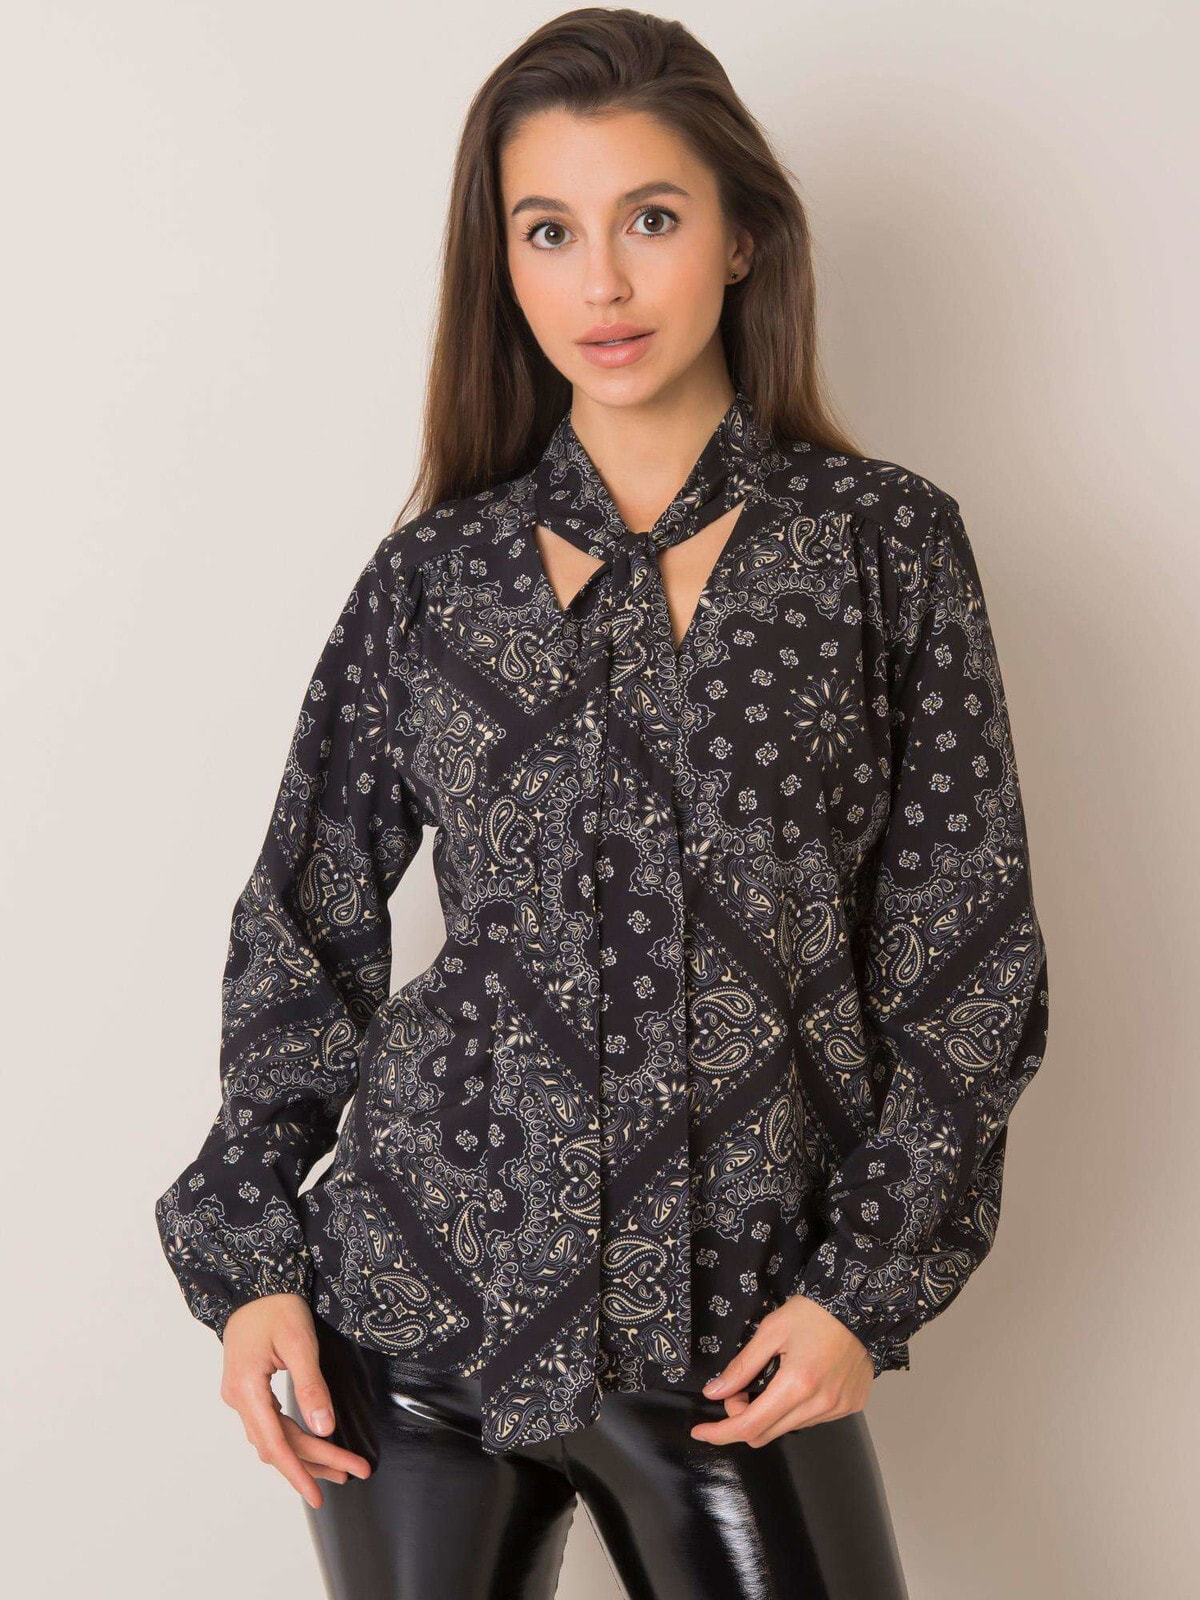 Женская блузка с длинным рукавом и вырезом на завязках Factory Price